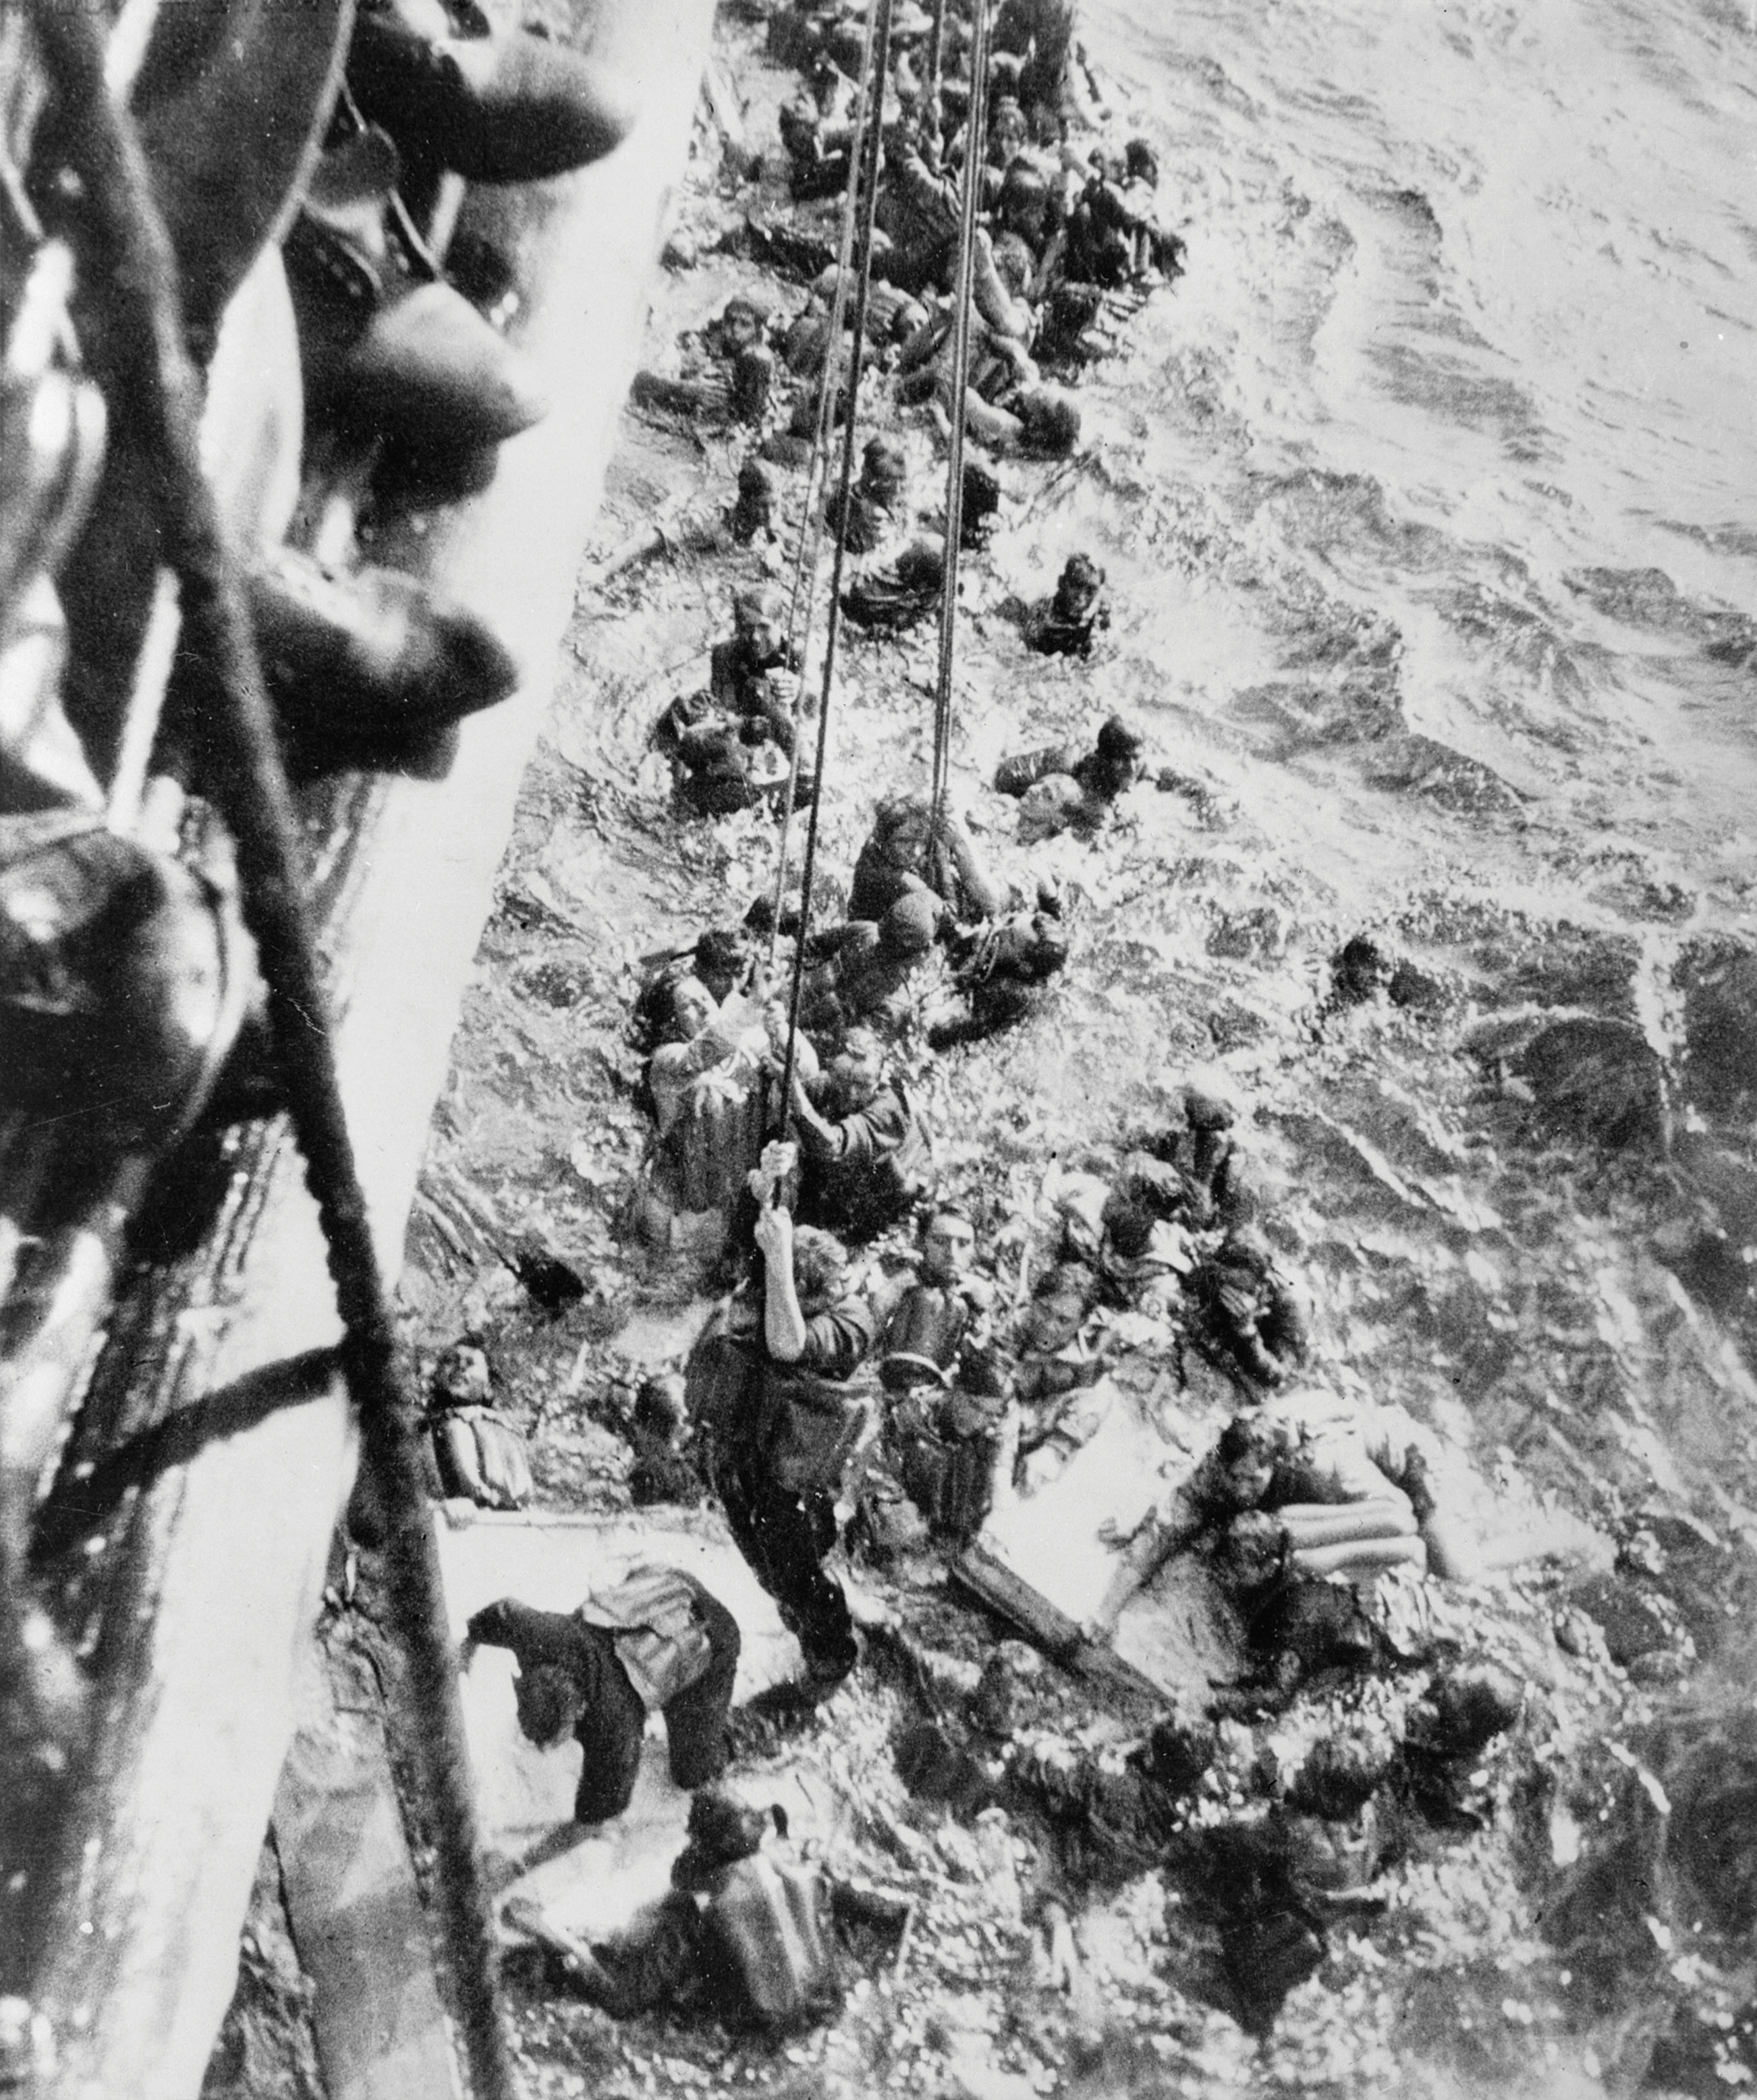 HMS_Dorsetshire_Bismarck_survivors.jpg